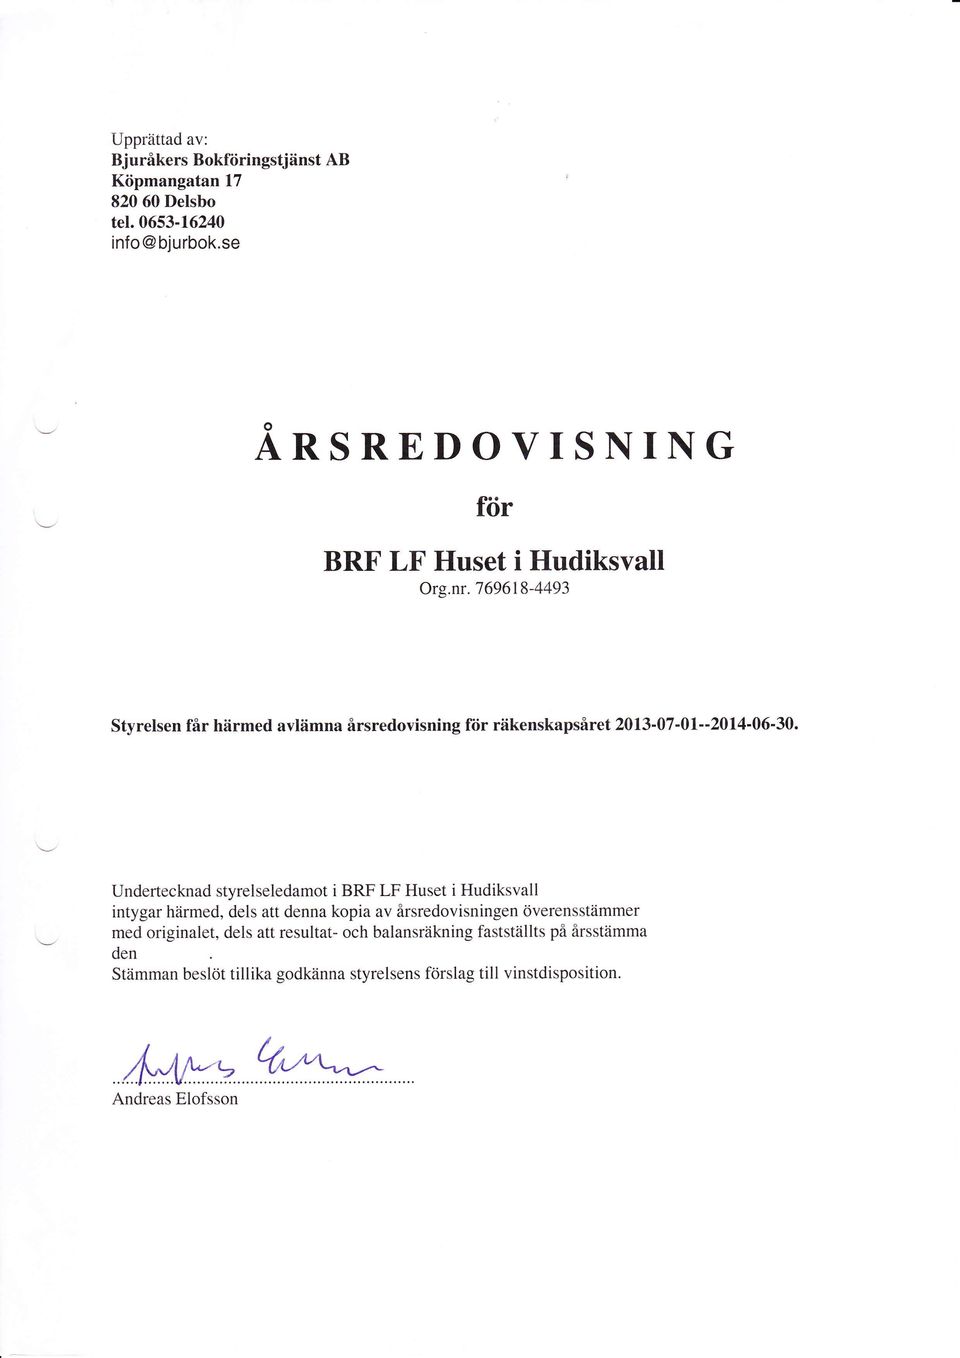 Undertecknad styrelseledamot i BRF LF Huset i Hudiksvall intygar härmed, dels att denna kopia av årsredovisningen överensstämmer med